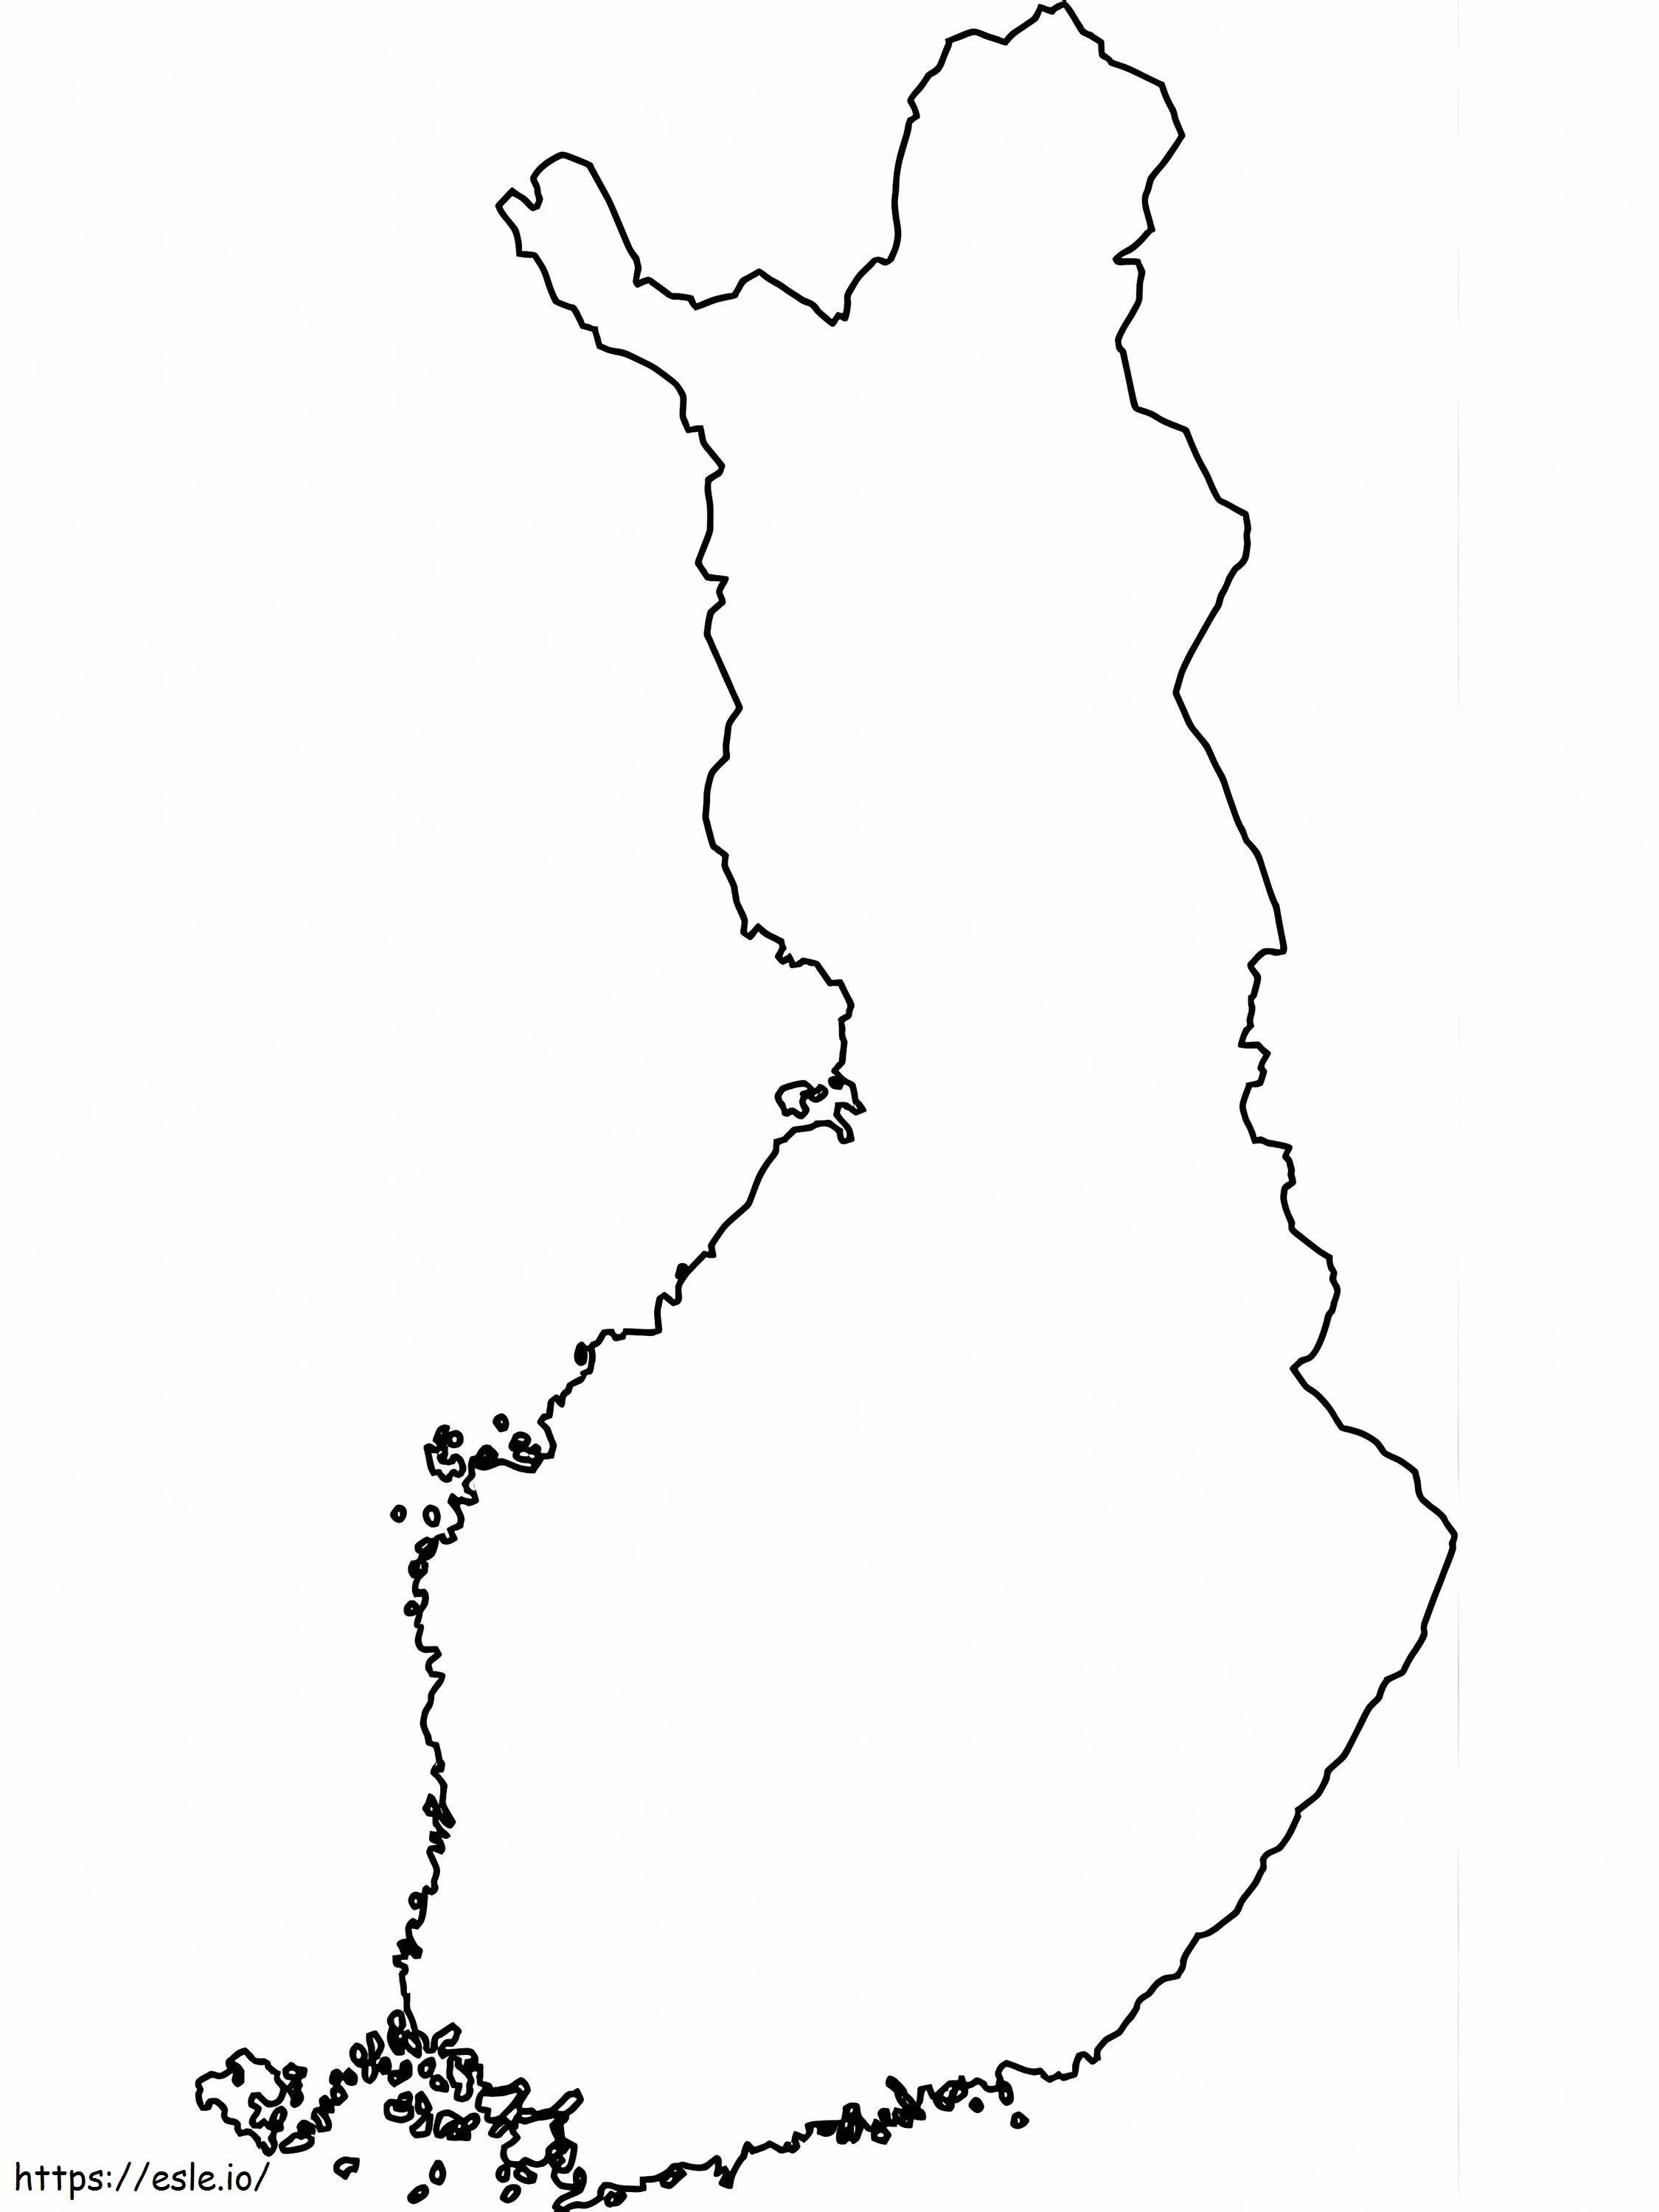 Finlandiya Haritası boyama